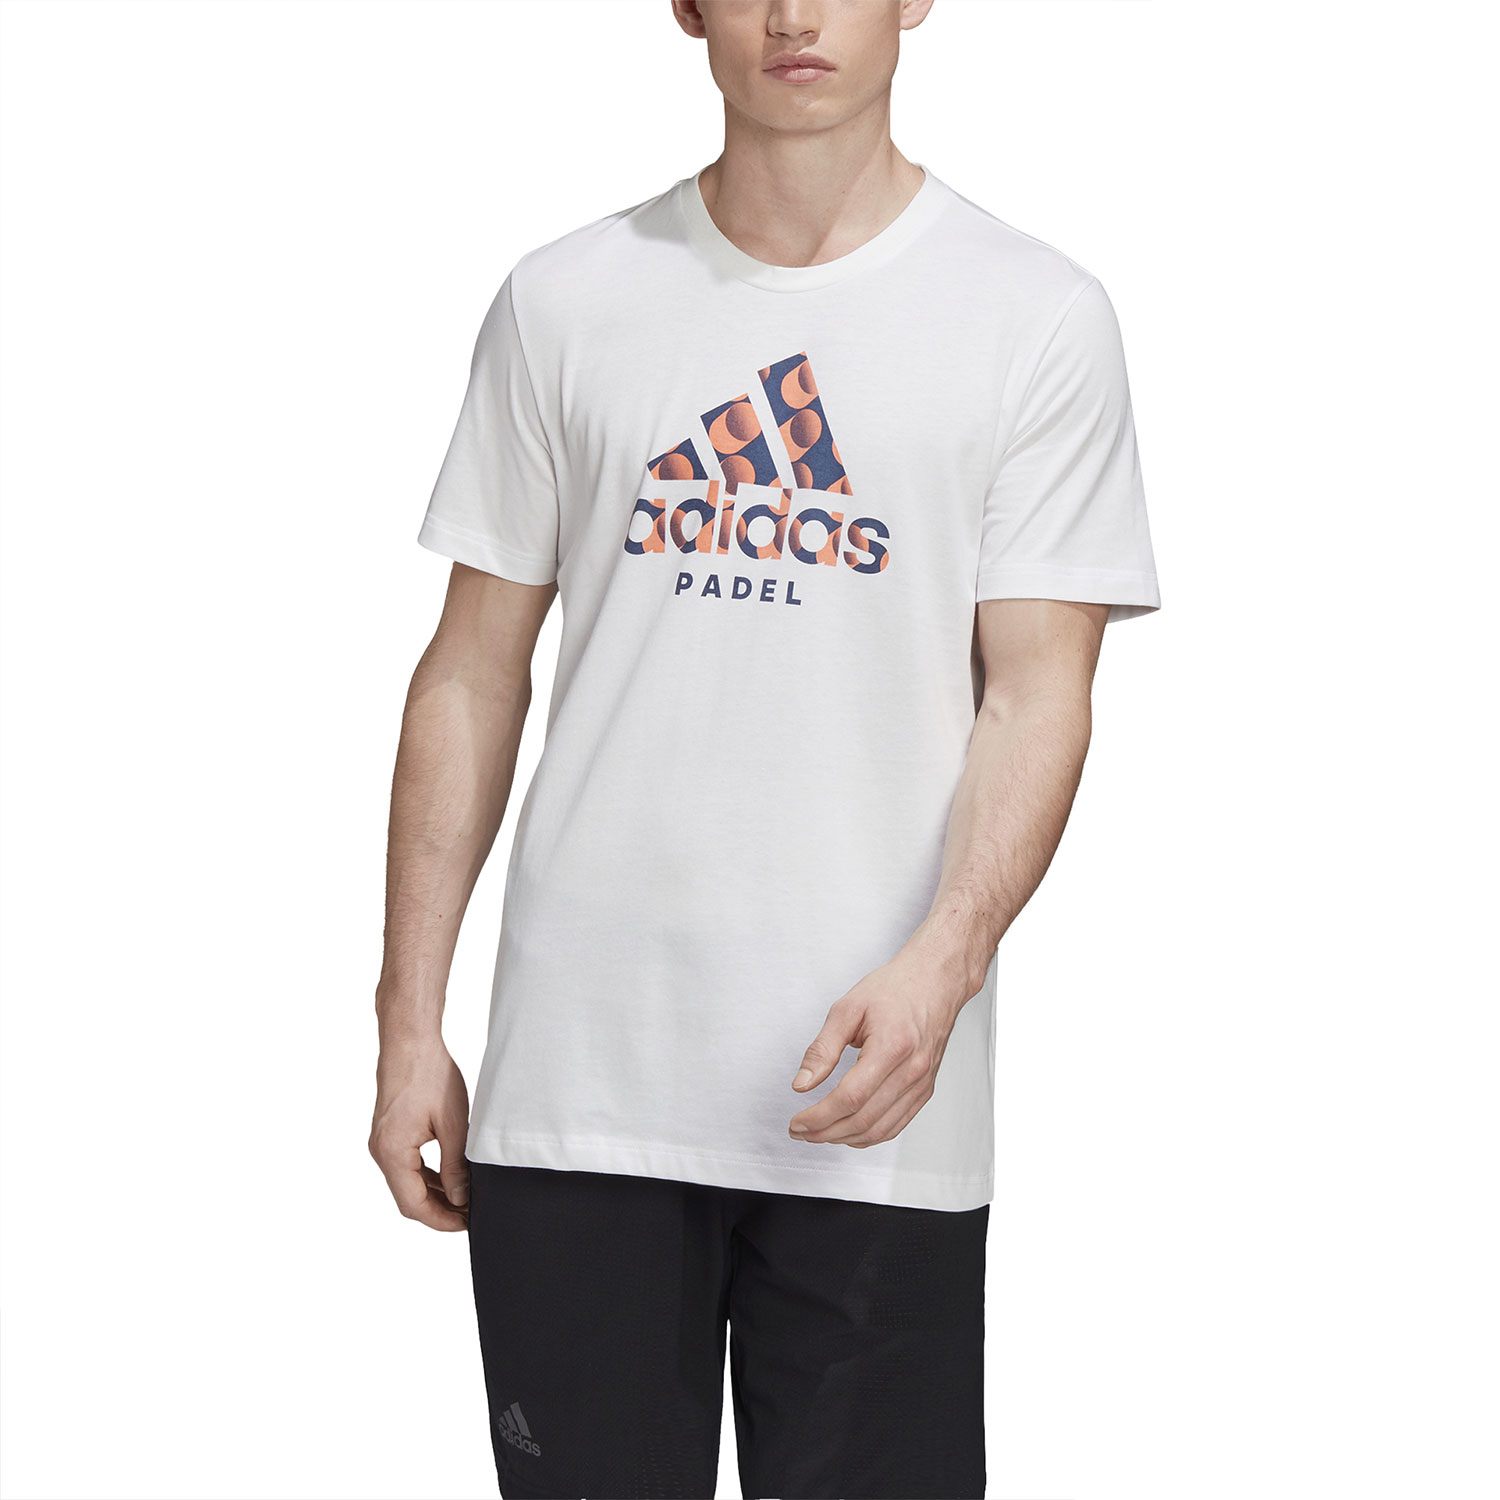 adidas Padel Logo Men's Tennis T-Shirt - White